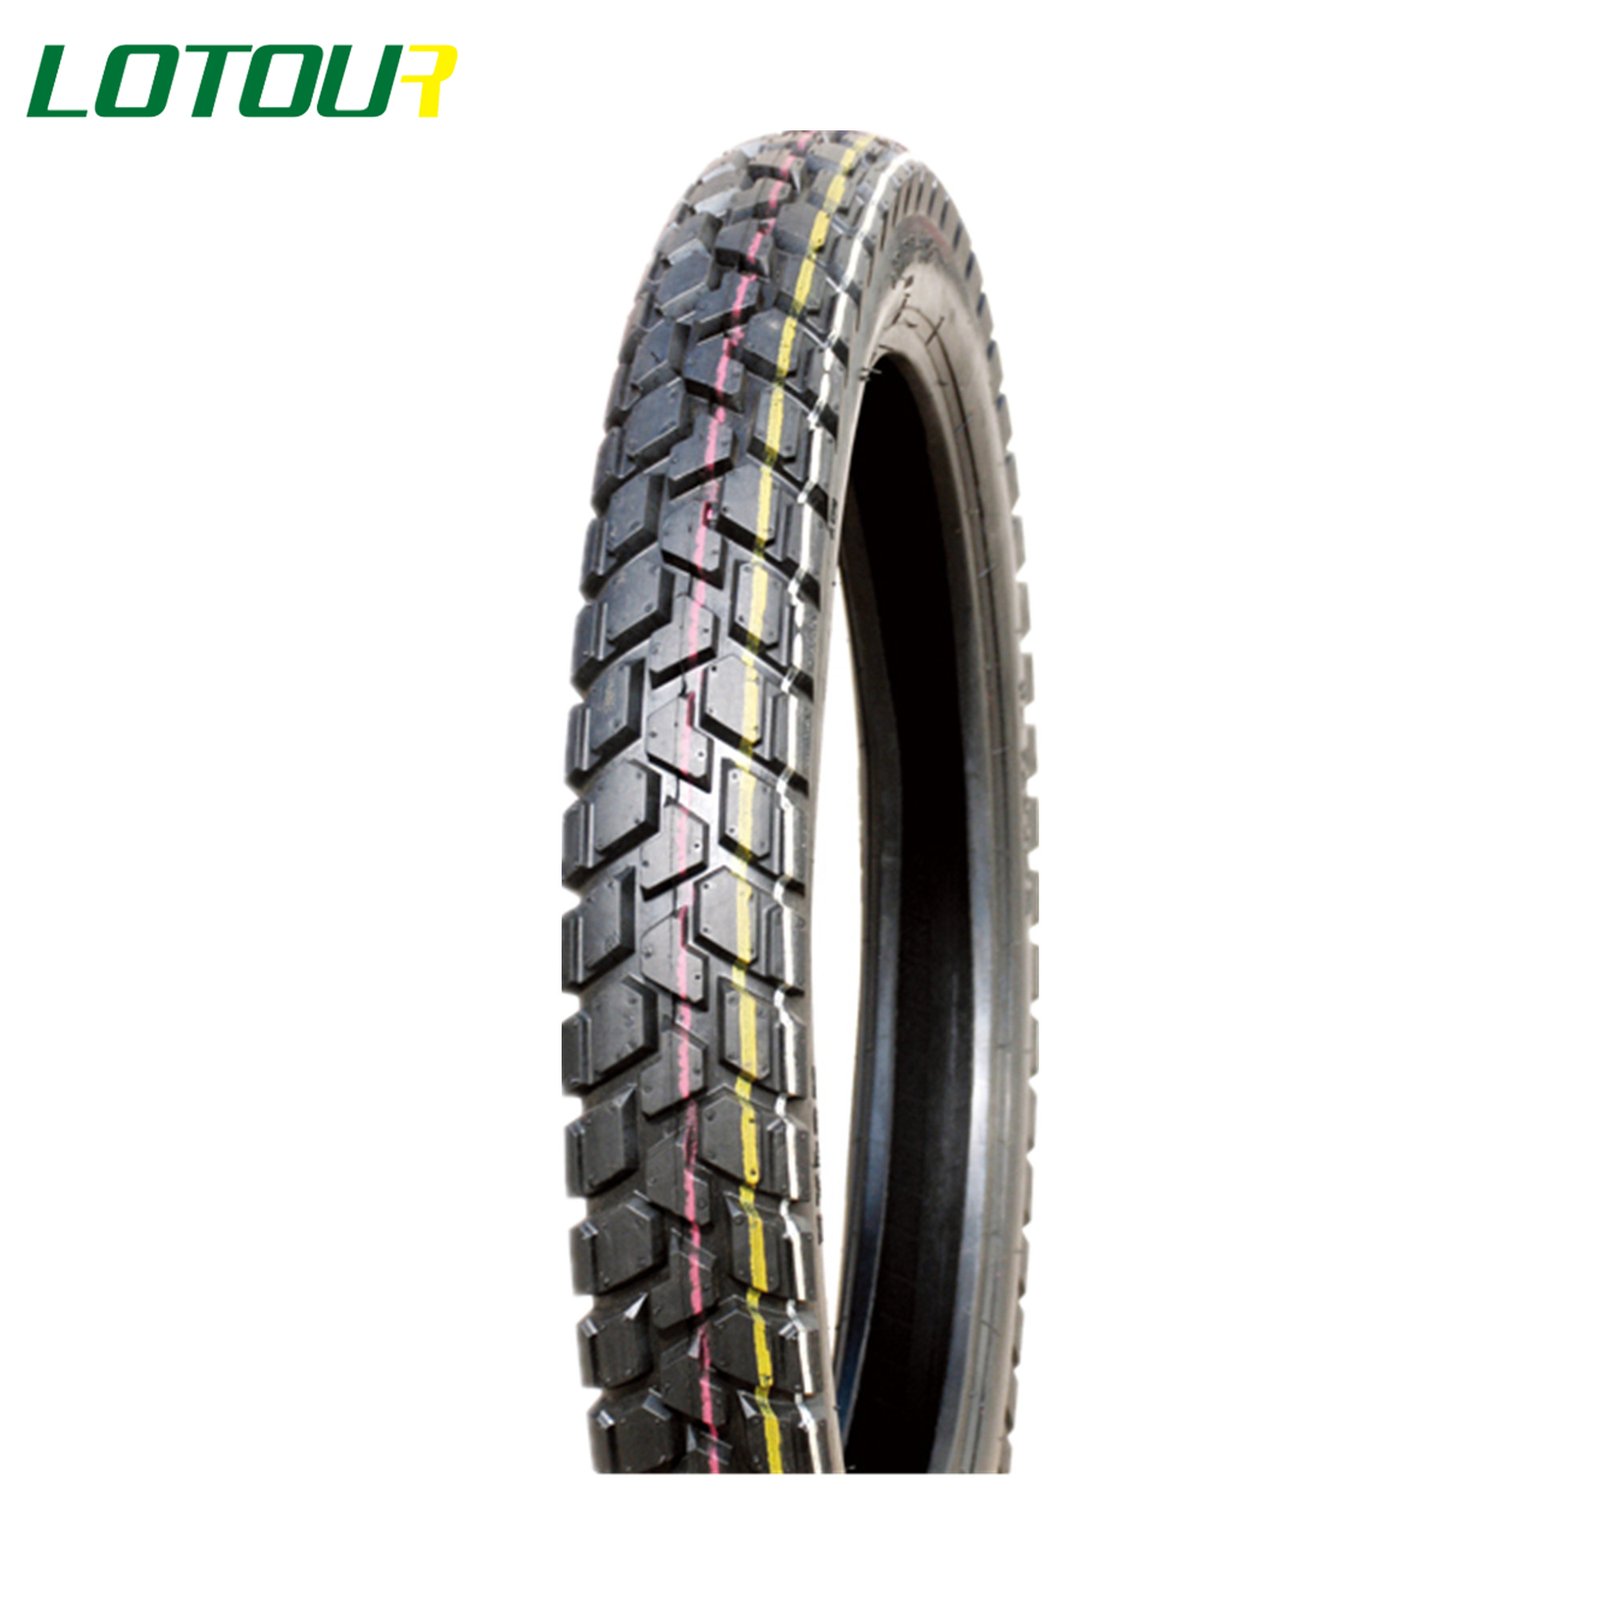 Lotour Tire M3039